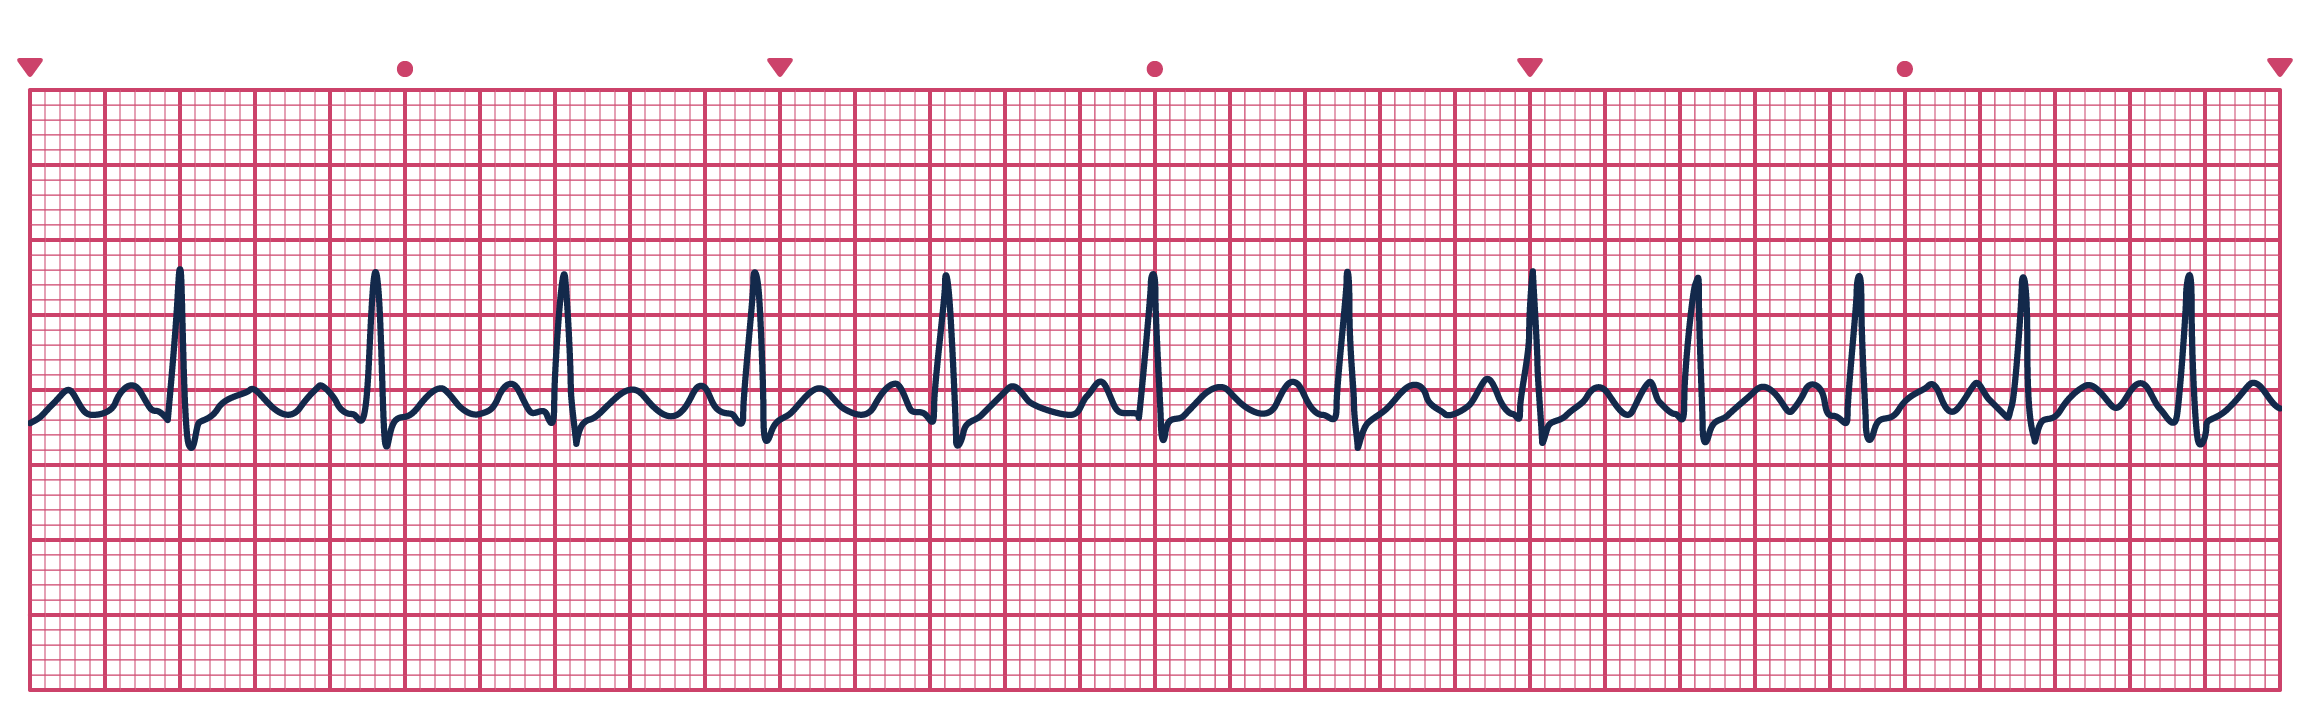 An ECG depicting Sinus Tachycardia